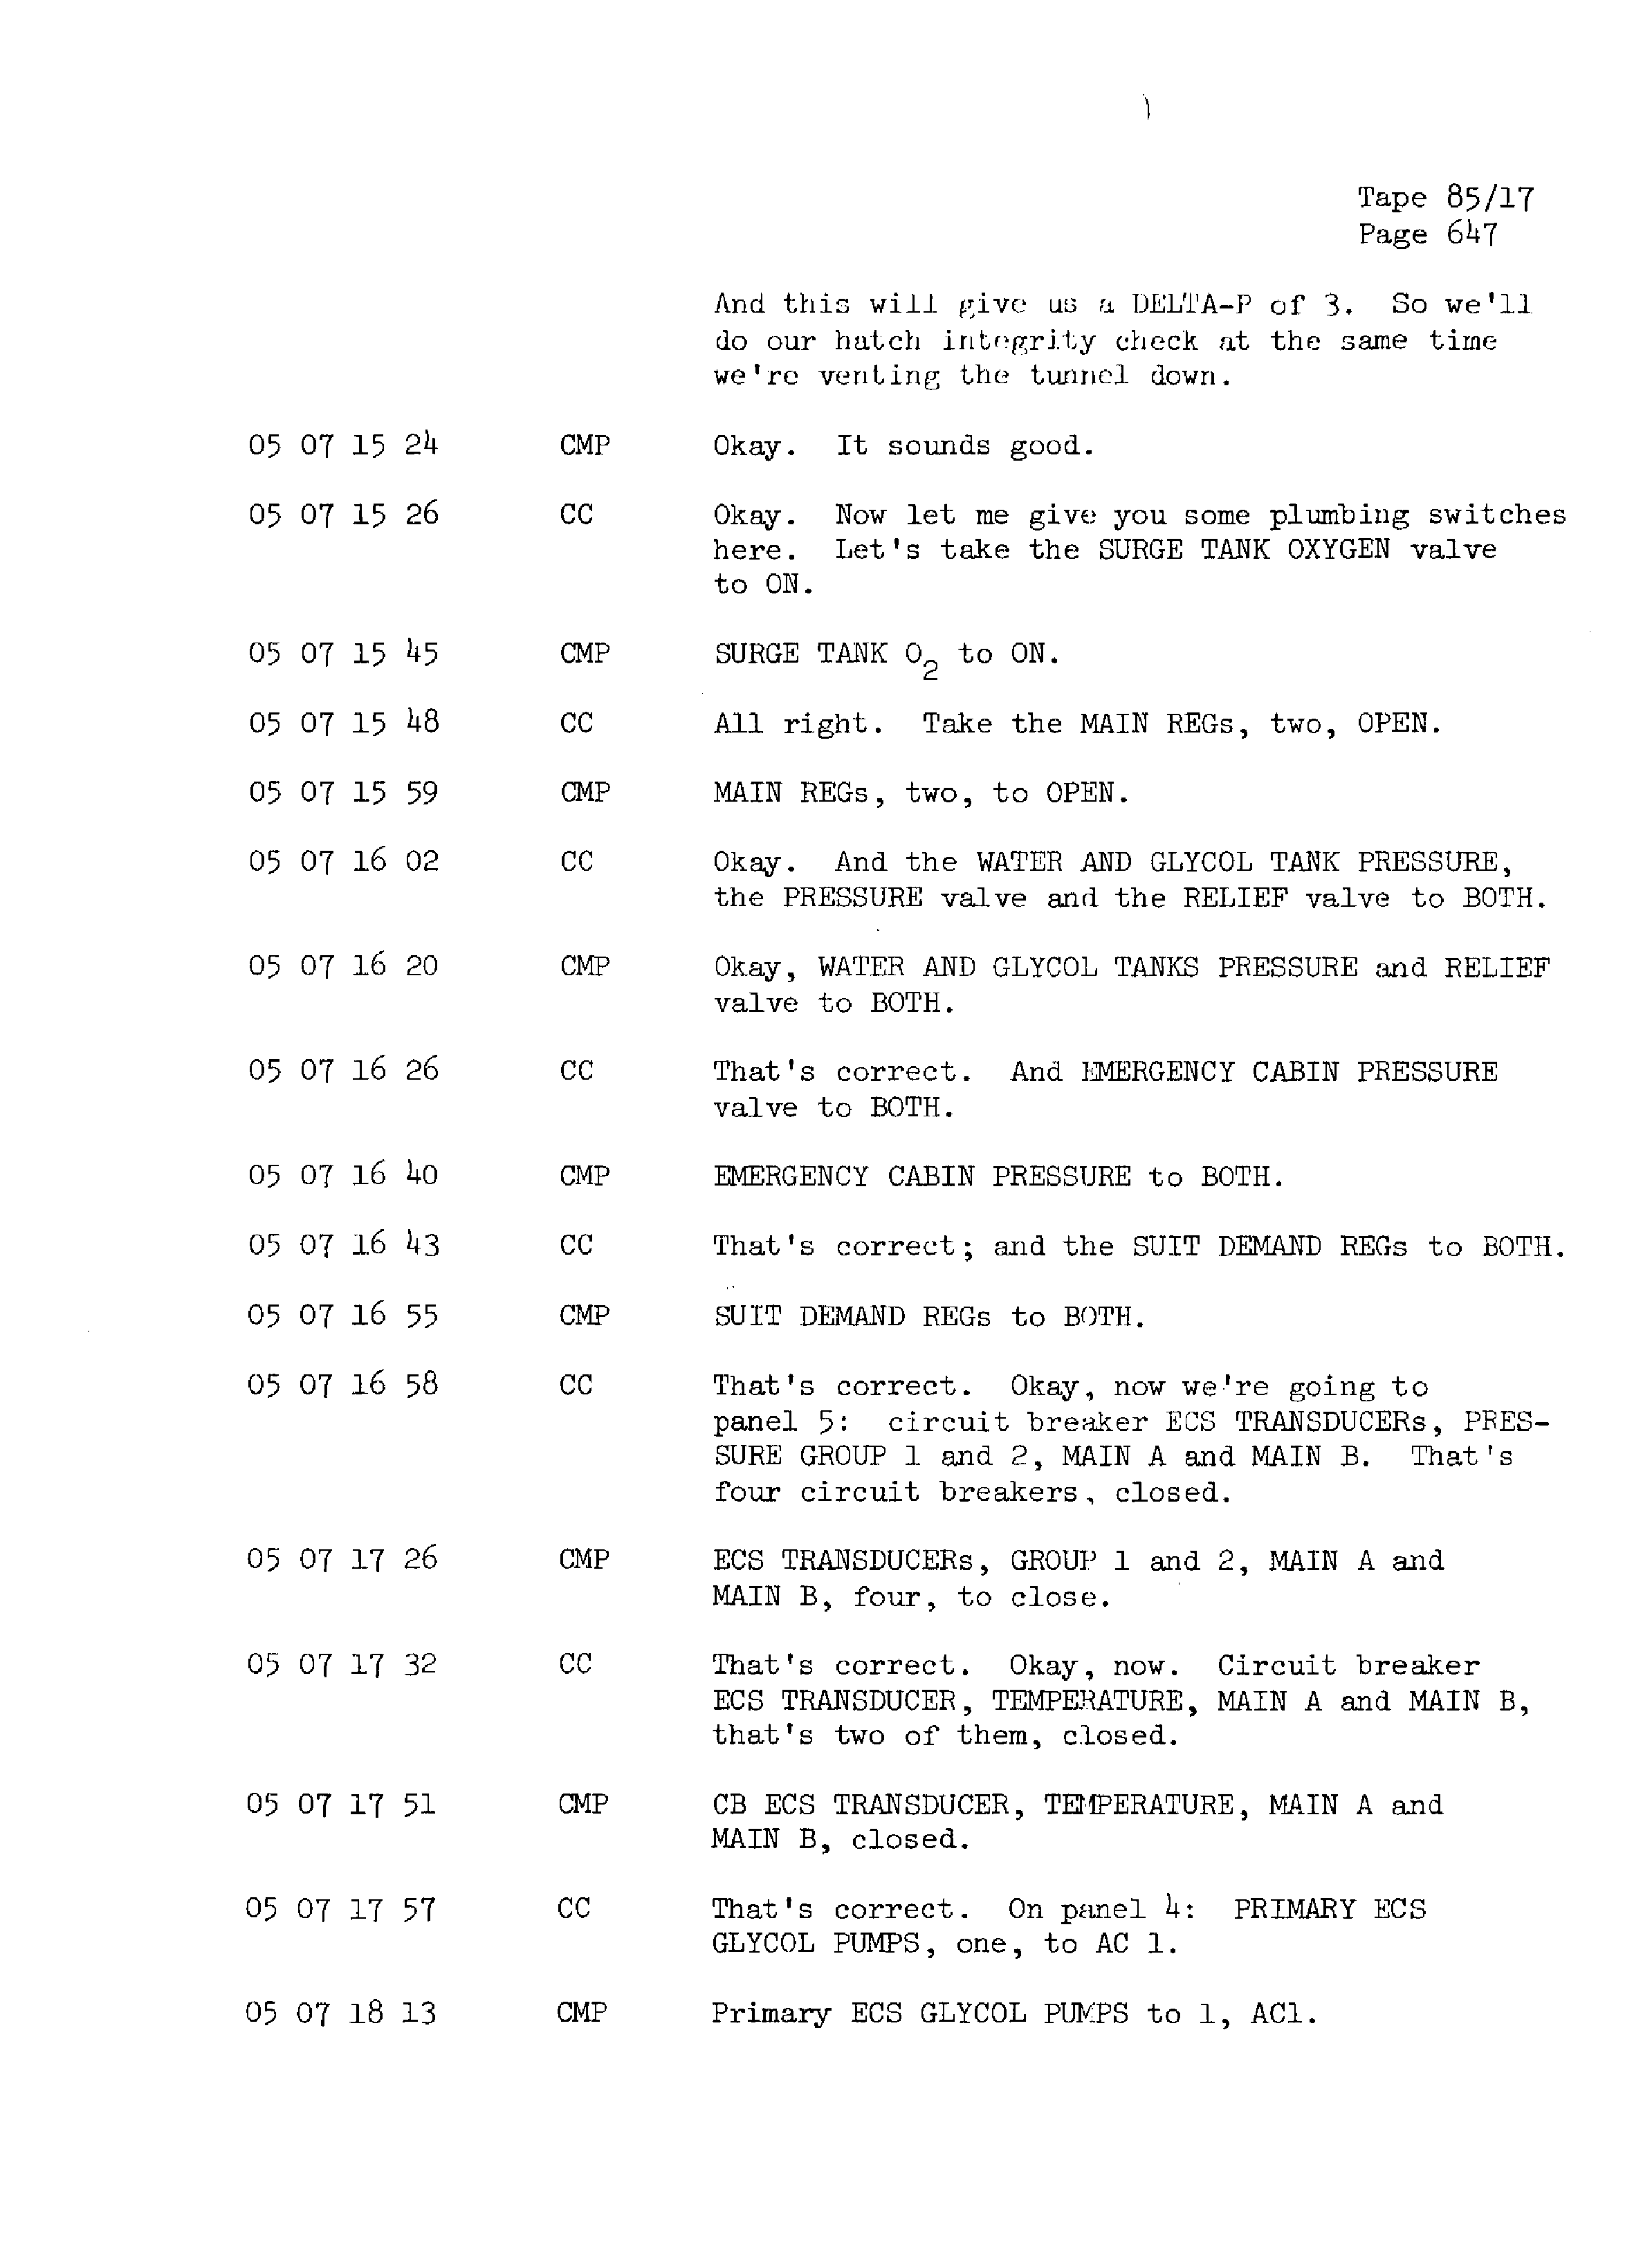 Page 654 of Apollo 13’s original transcript